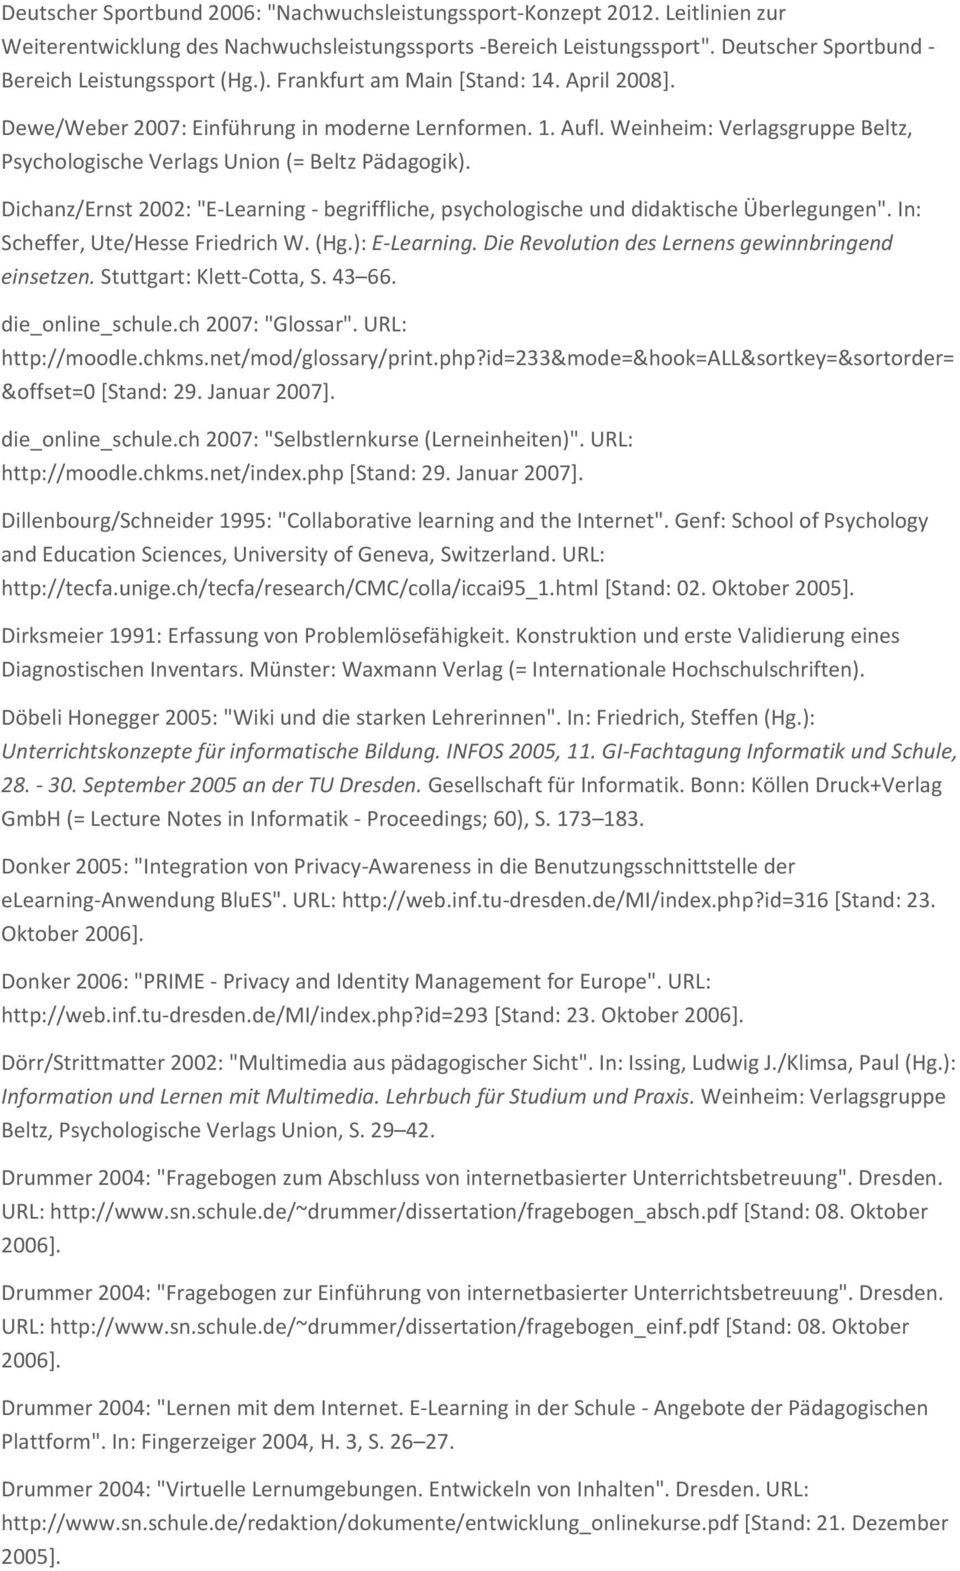 Weinheim: Verlagsgruppe Beltz, Psychologische Verlags Union (= Beltz Pädagogik). Dichanz/Ernst 2002: "E-Learning - begriffliche, psychologische und didaktische Überlegungen".